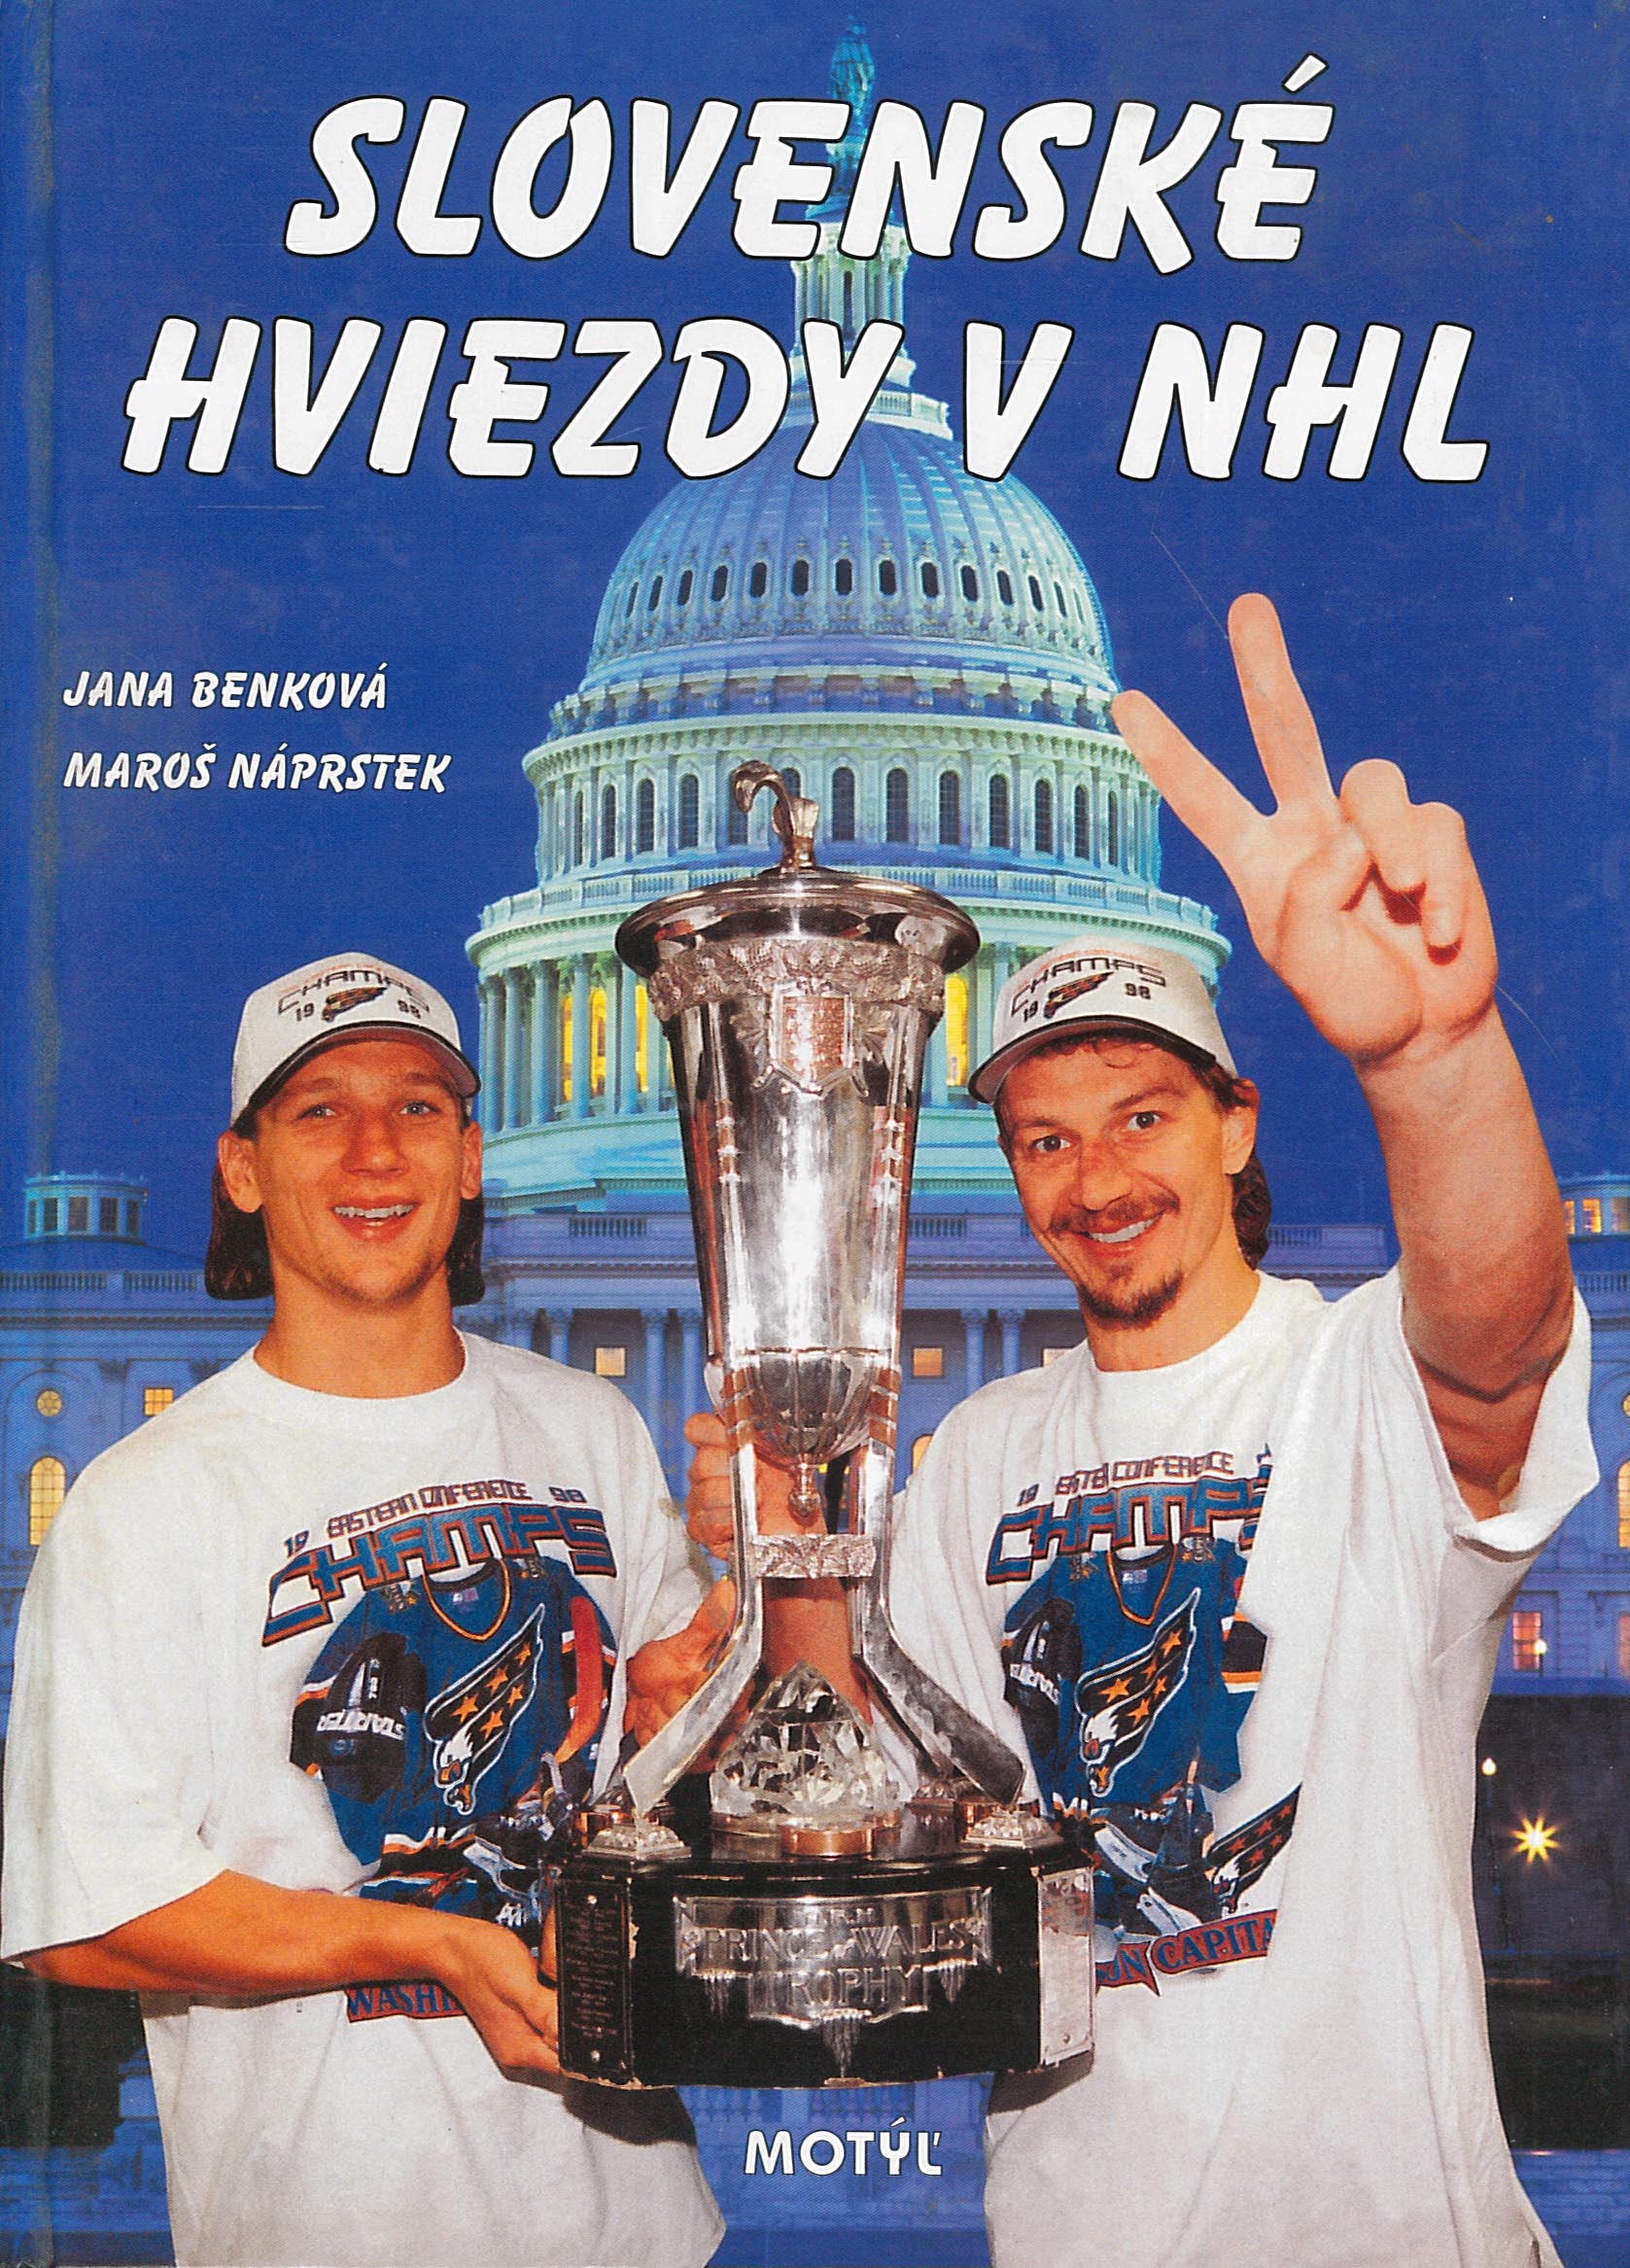 Slovenské hviezdy v NHL (Jana Benková)